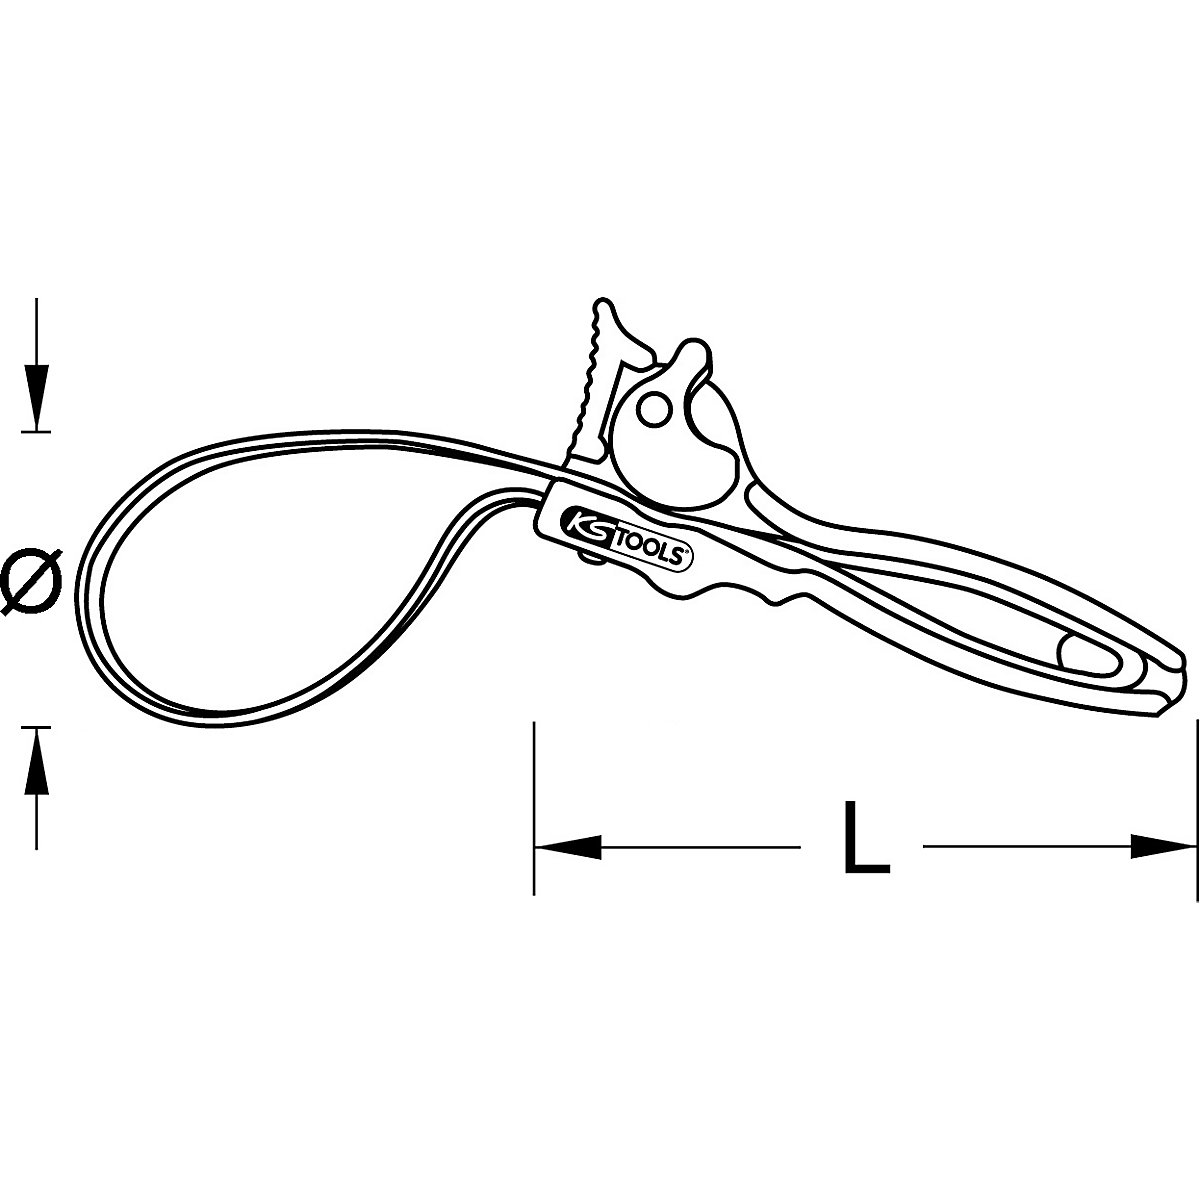 Pasowe szczypce do rur – KS Tools (Zdjęcie produktu 6)-5